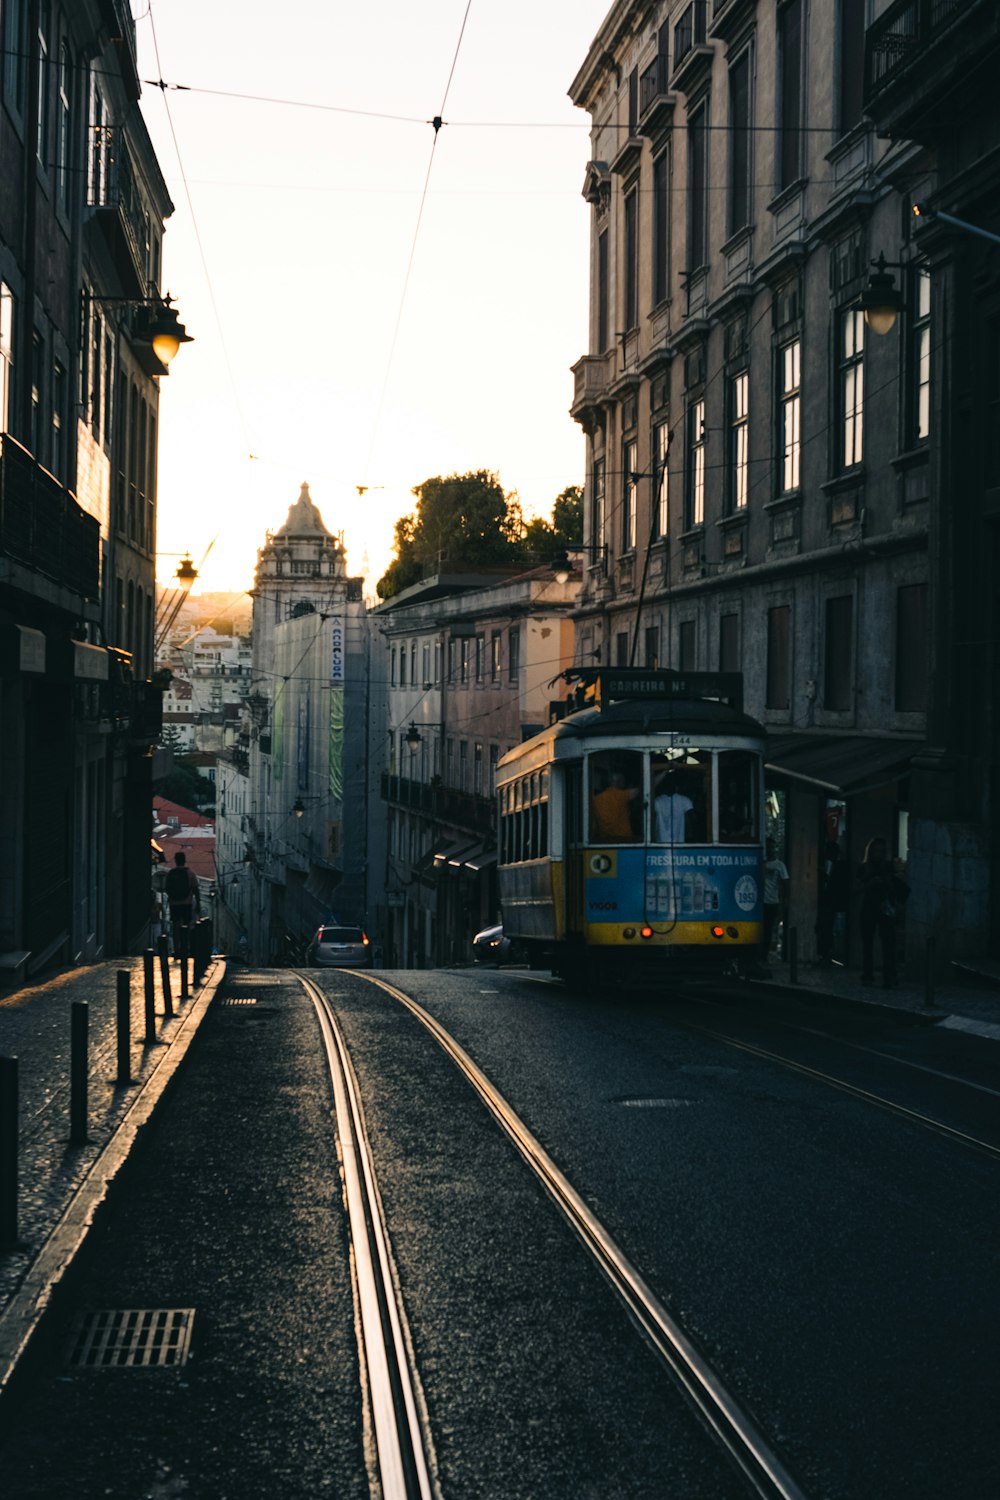 Ein Trolley auf einer Straße